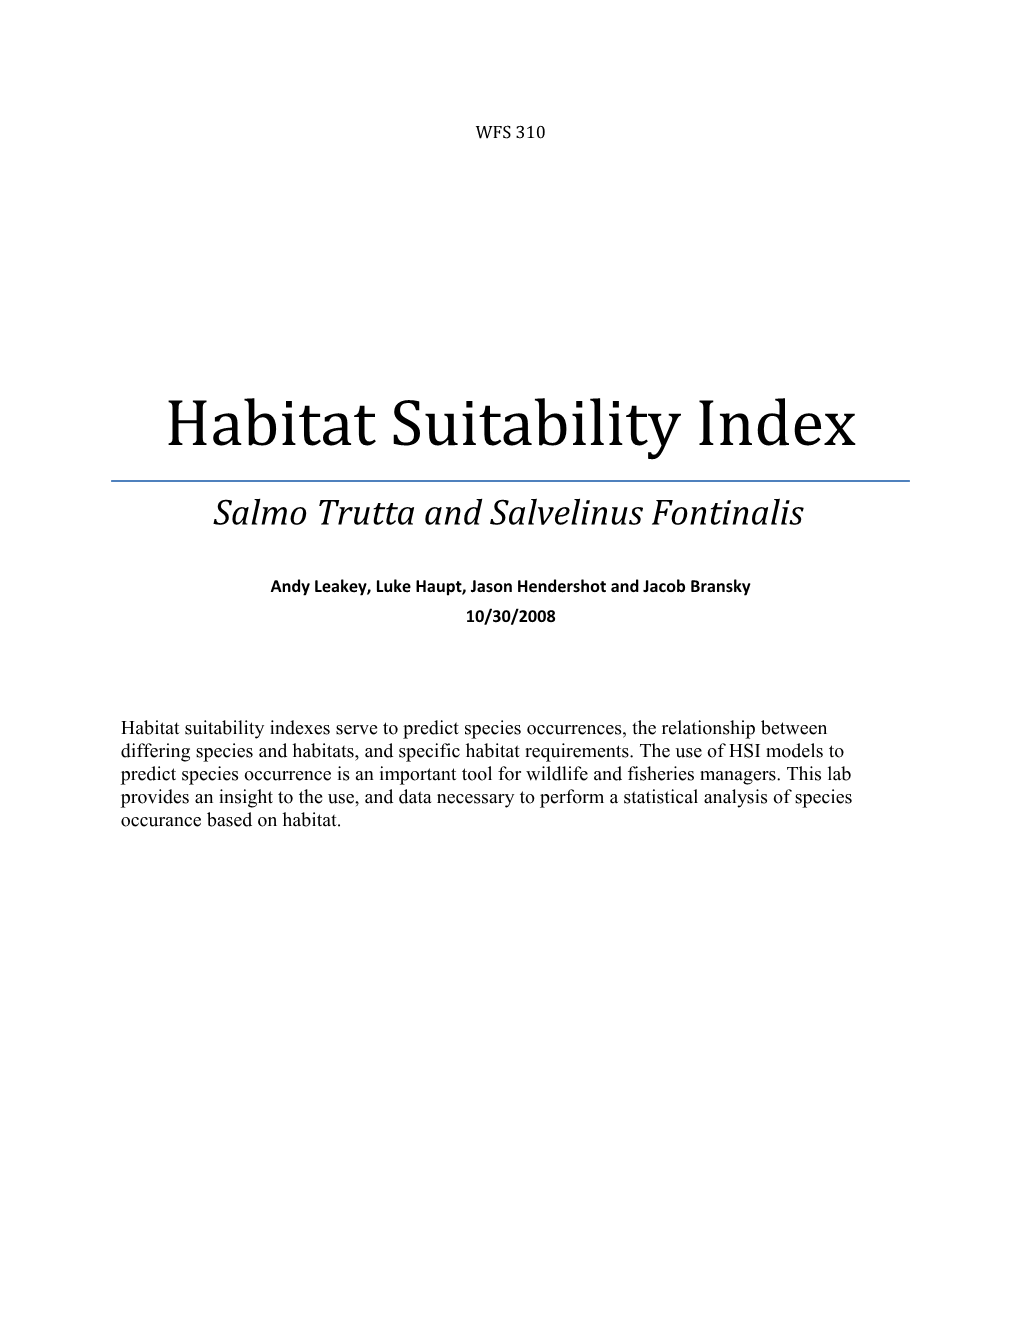 Habitat Suitability Index